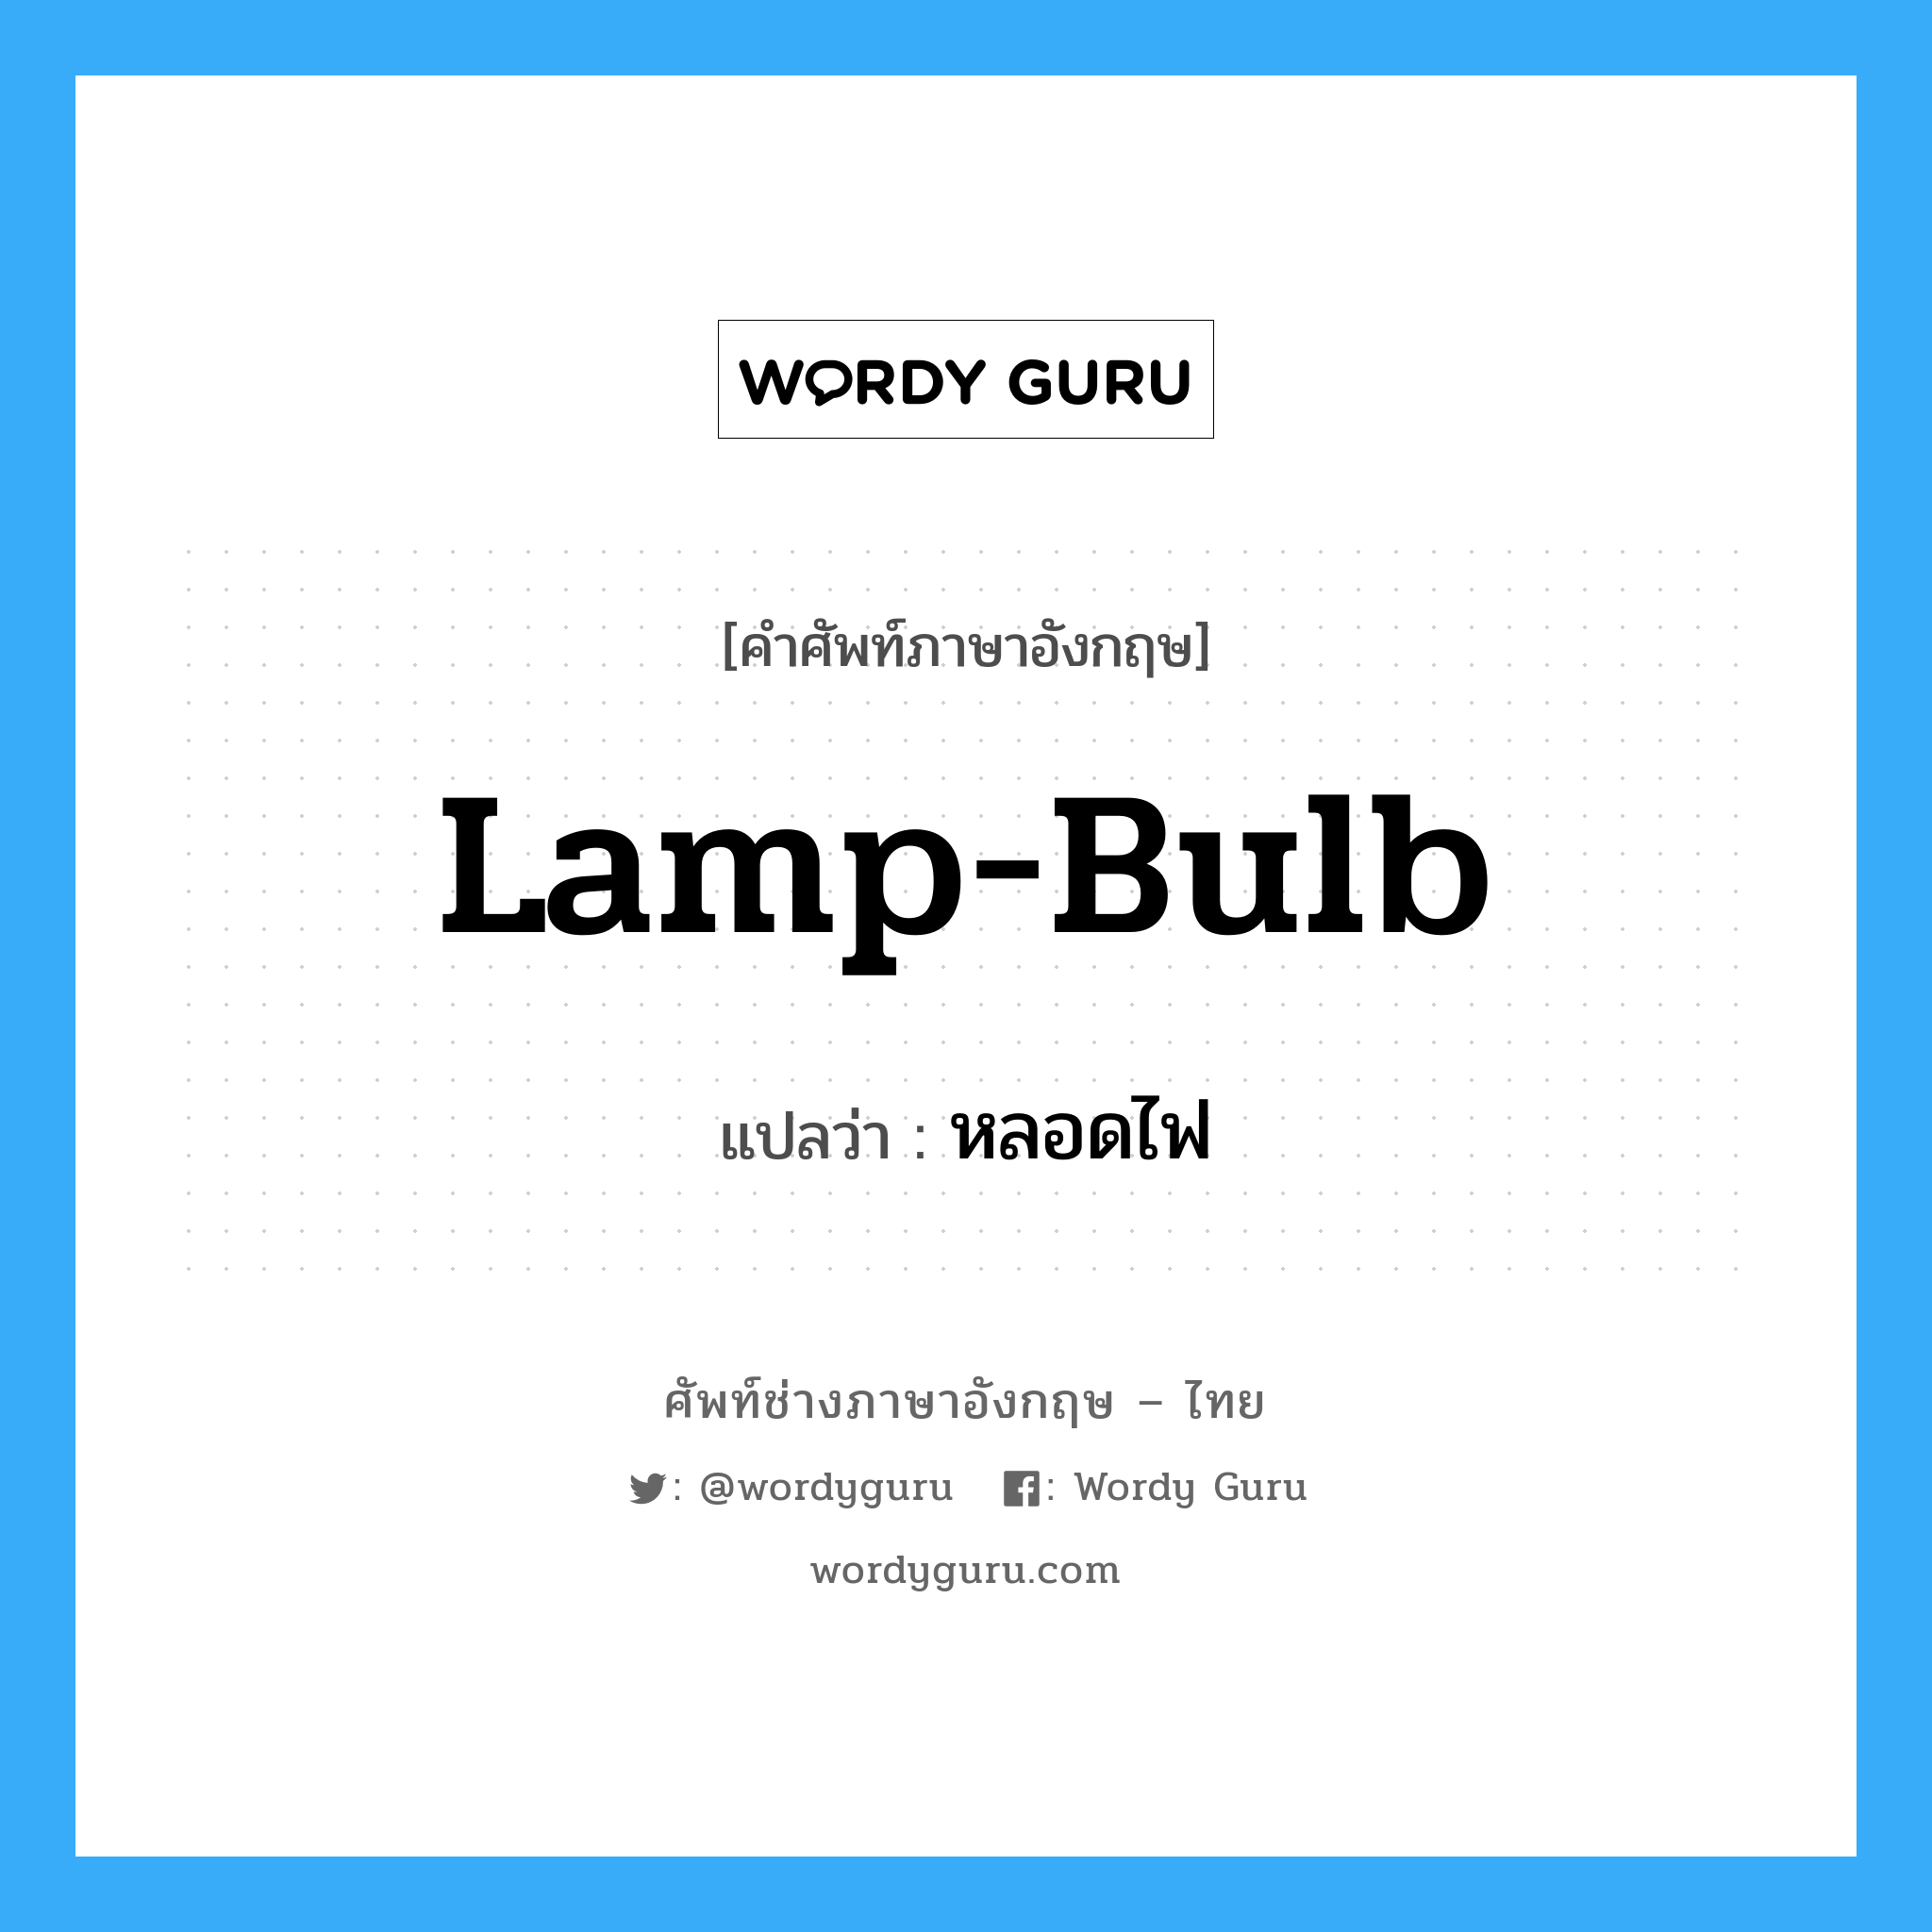 lamp-bulb แปลว่า?, คำศัพท์ช่างภาษาอังกฤษ - ไทย lamp-bulb คำศัพท์ภาษาอังกฤษ lamp-bulb แปลว่า หลอดไฟ